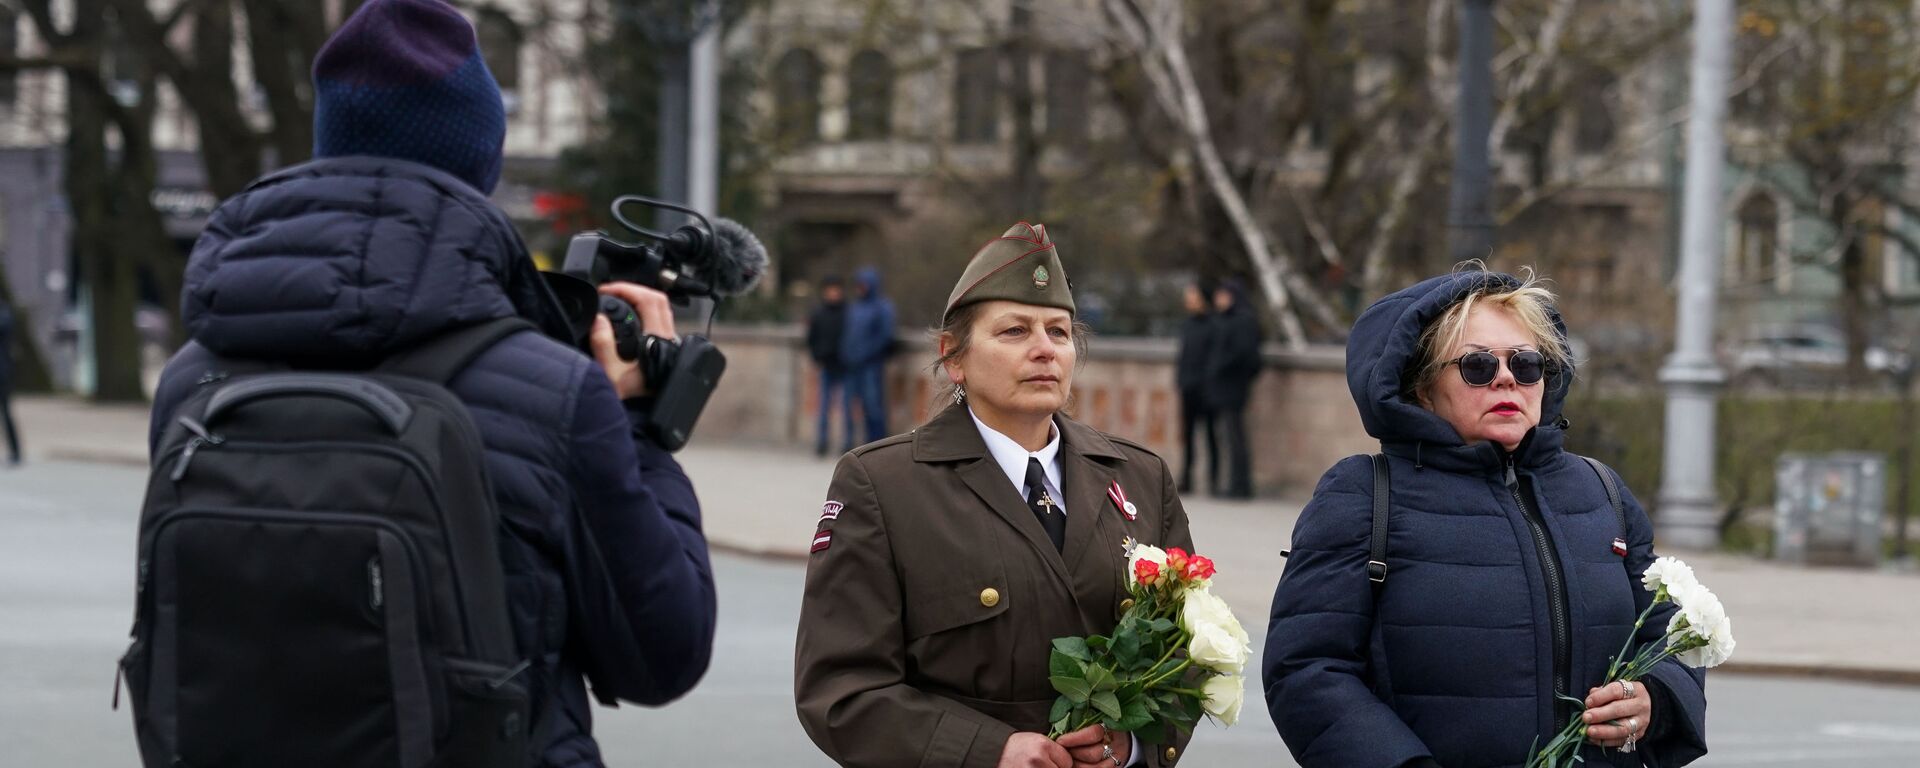 Возложение цветов к памятнику Свободы в Риге 16 марта 2020 года - Sputnik Латвия, 1920, 12.03.2021